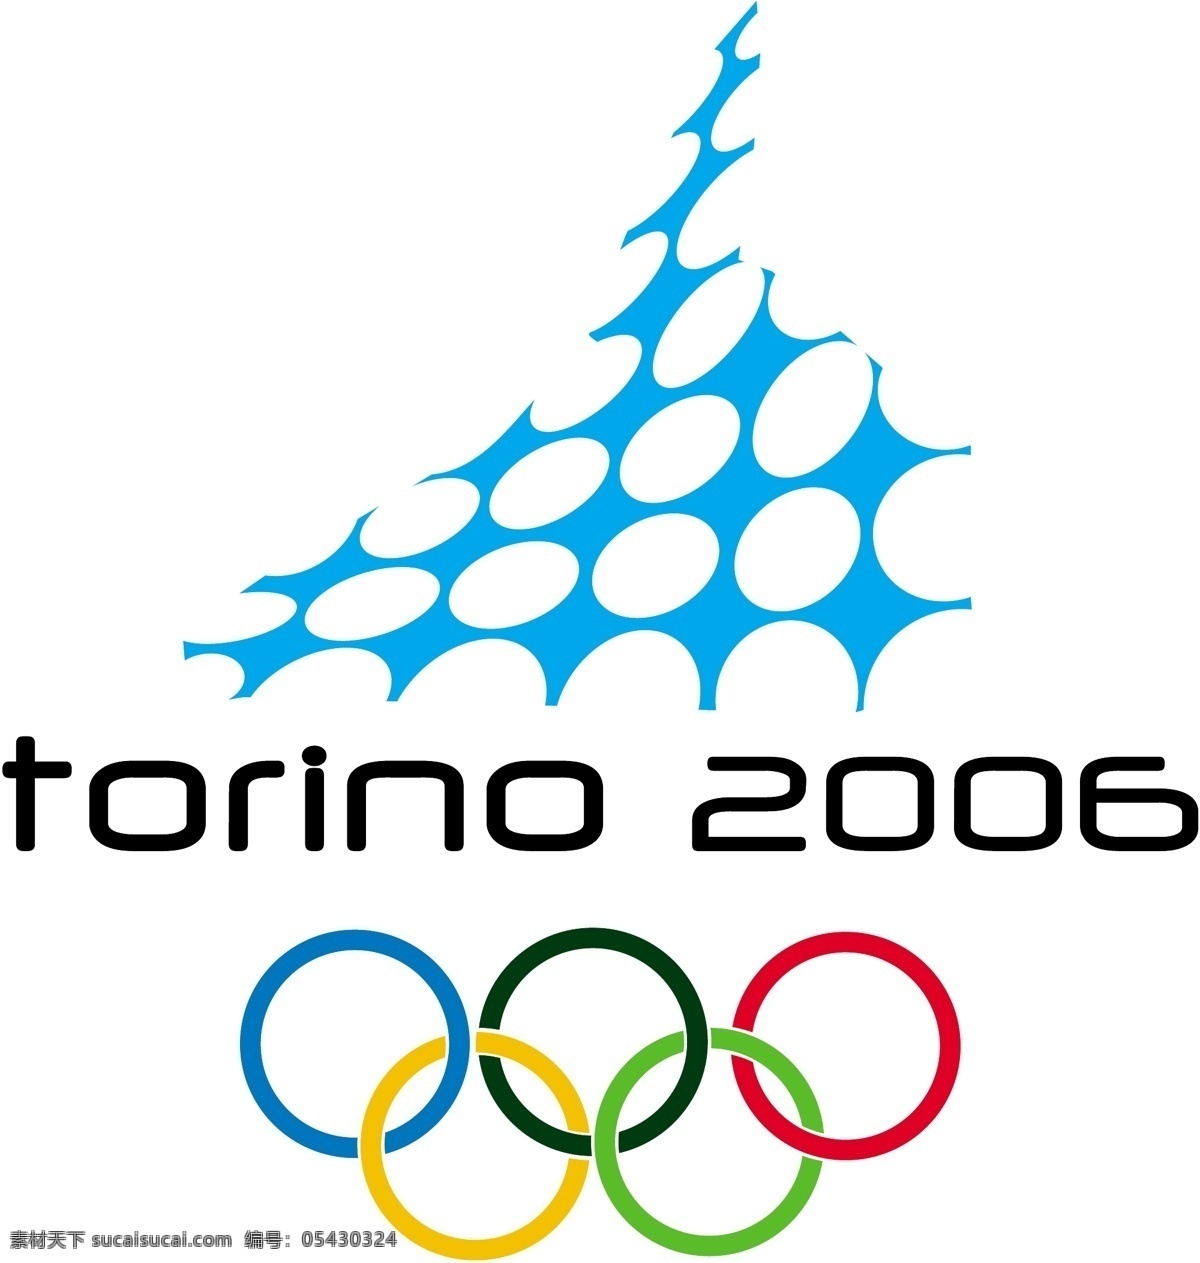 2006 意大利 都灵 冬奥会 标志 矢量图 logo大全 商业矢量 矢量下载 网页矢量 其他矢量图